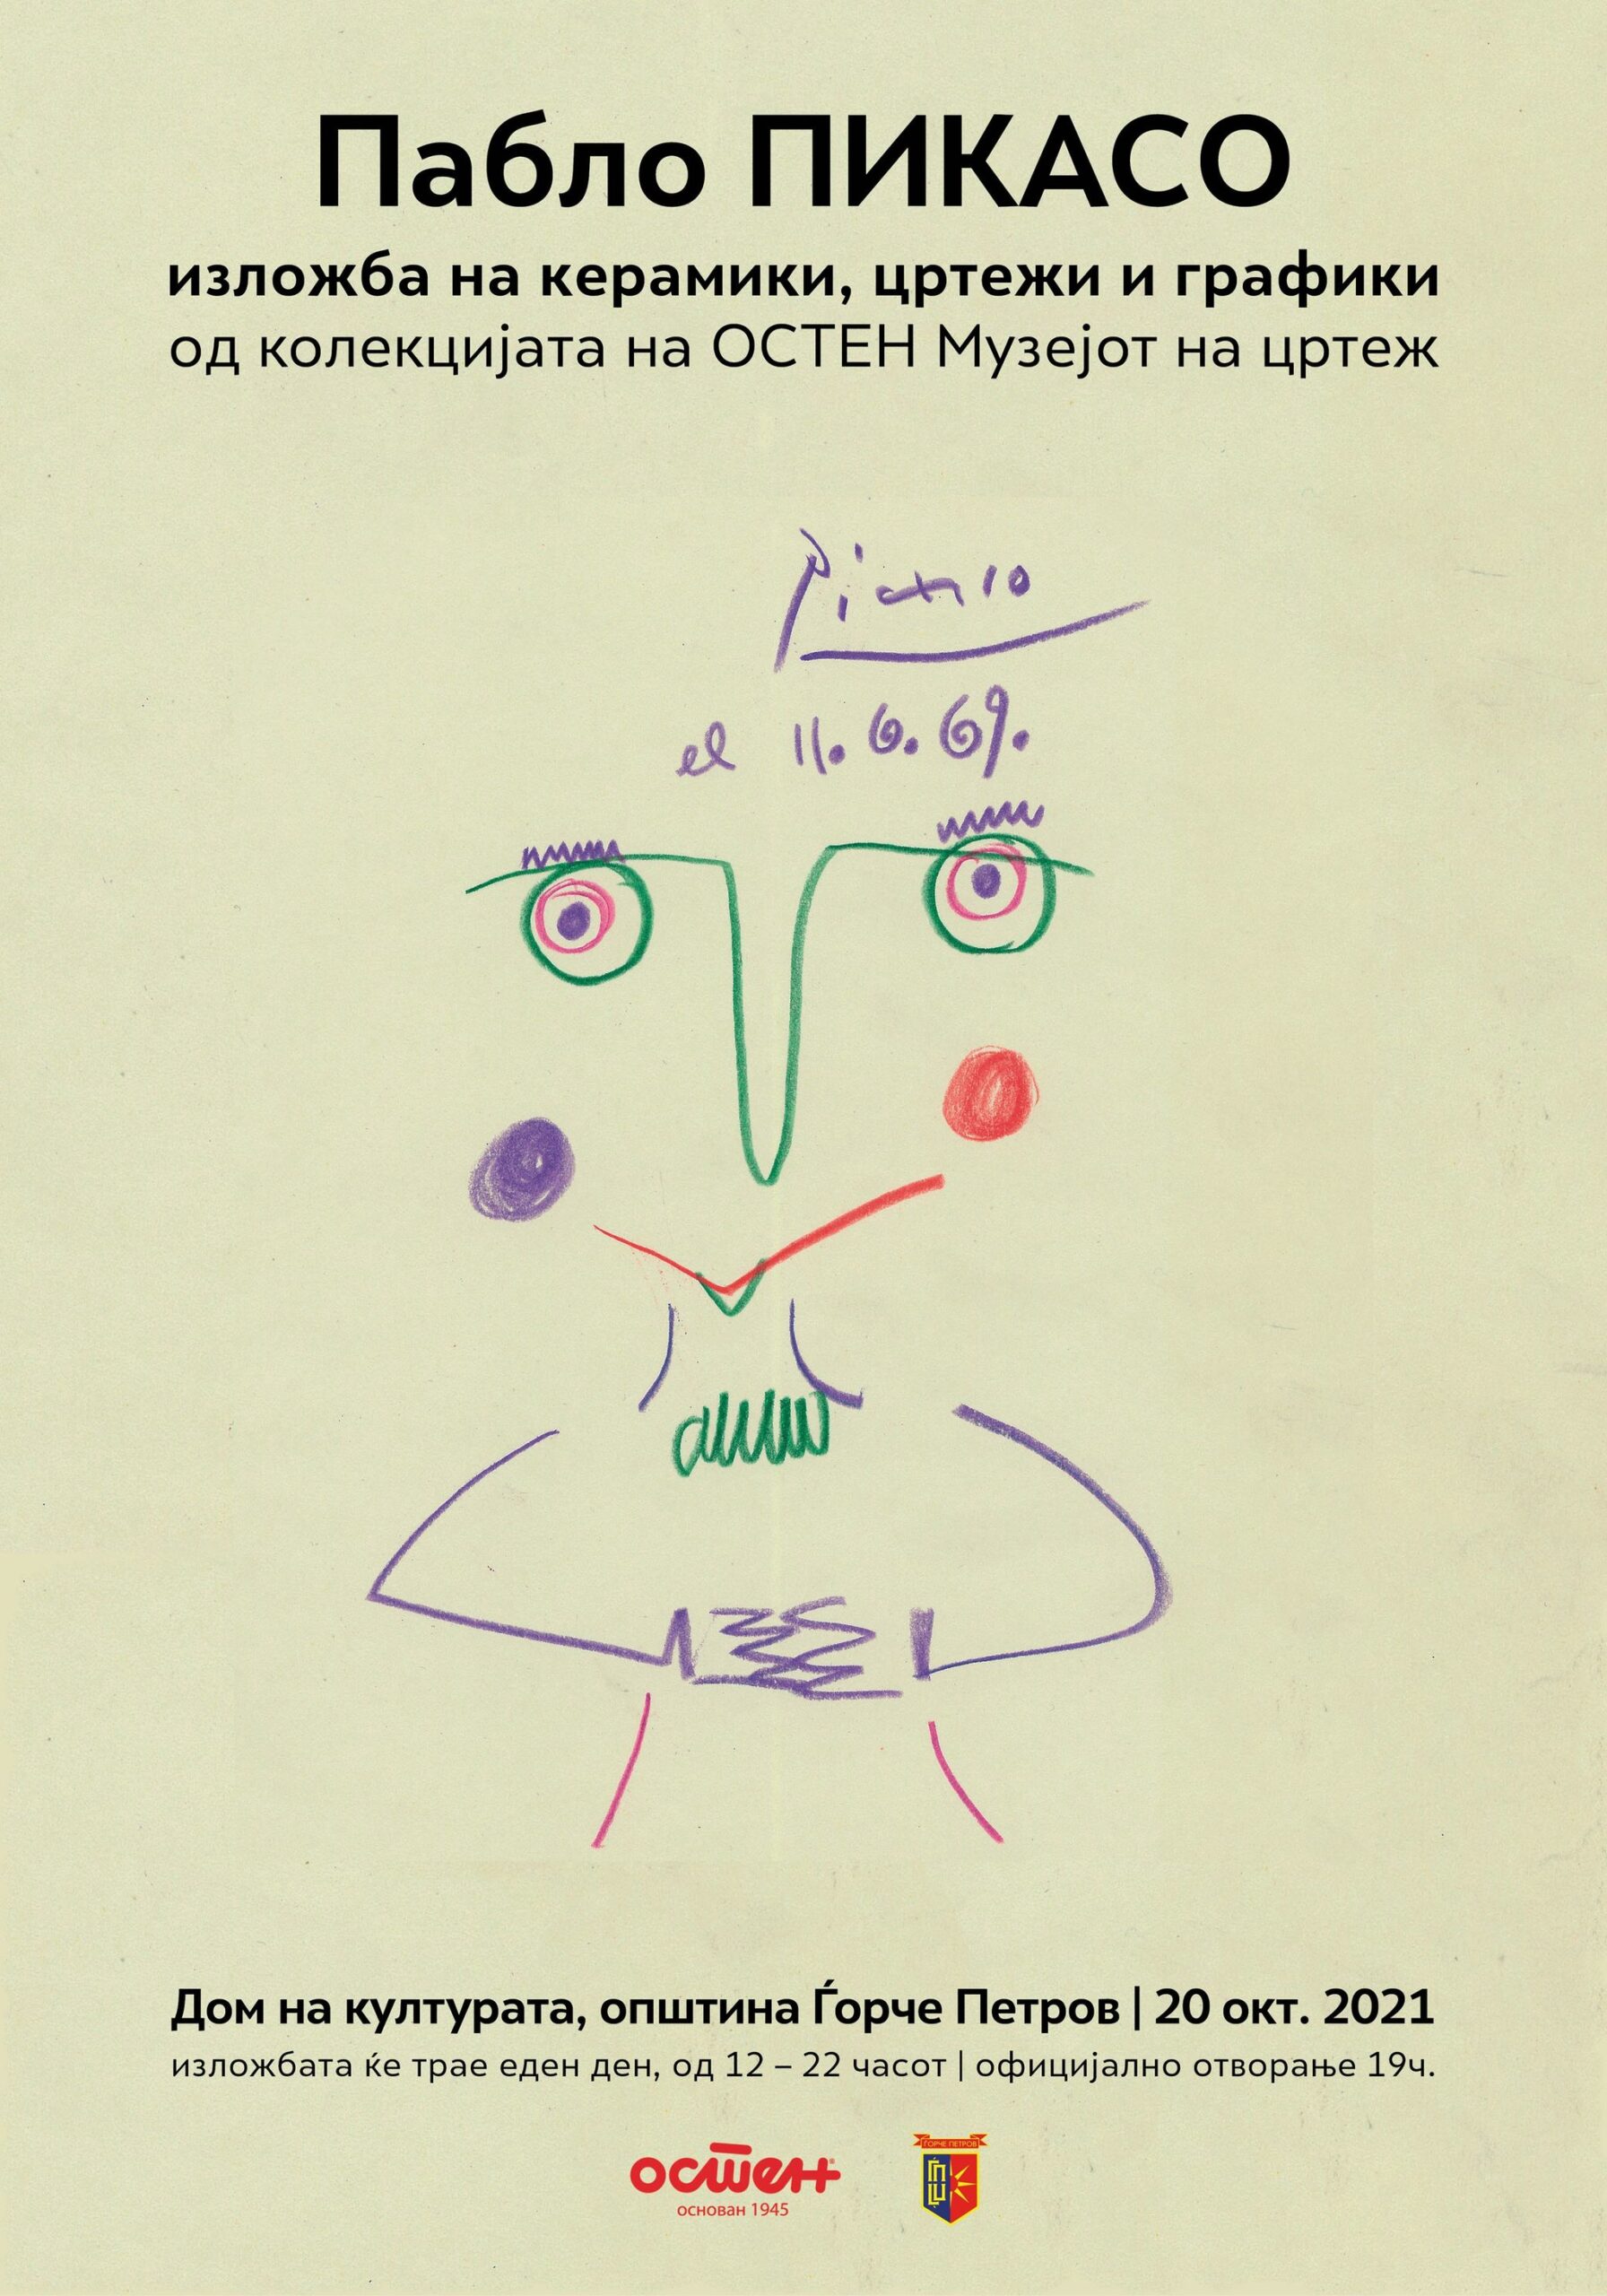 ИЗЛОЖБА на Пабло ПИКАСО – керамики, цртежи и графики од колекцијата на ОСТЕН Музејот на цртеж